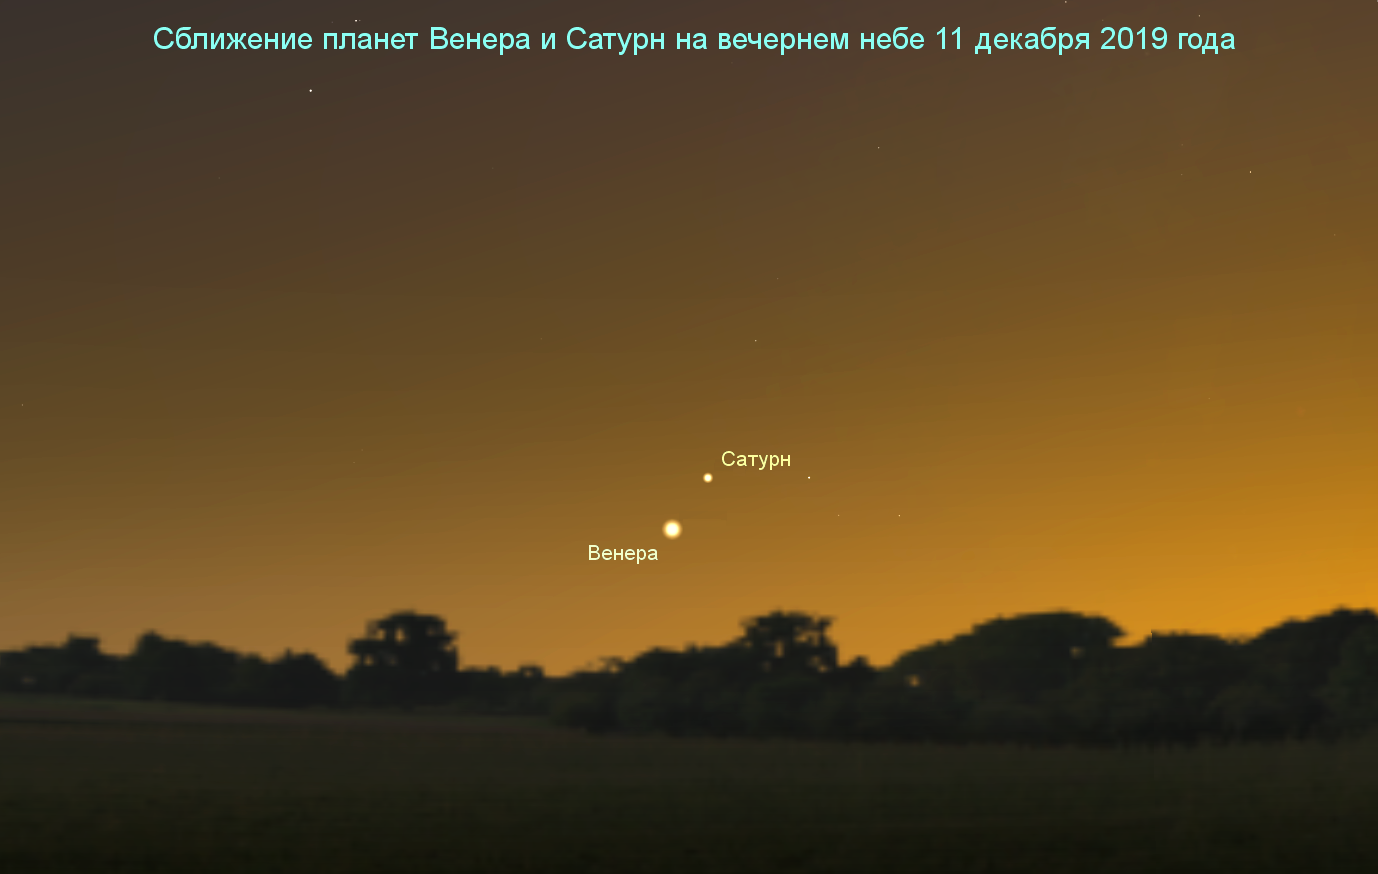 Сближение планеты Венера и планеты Сатурн на вечернем небе 11 декабря 2019 года